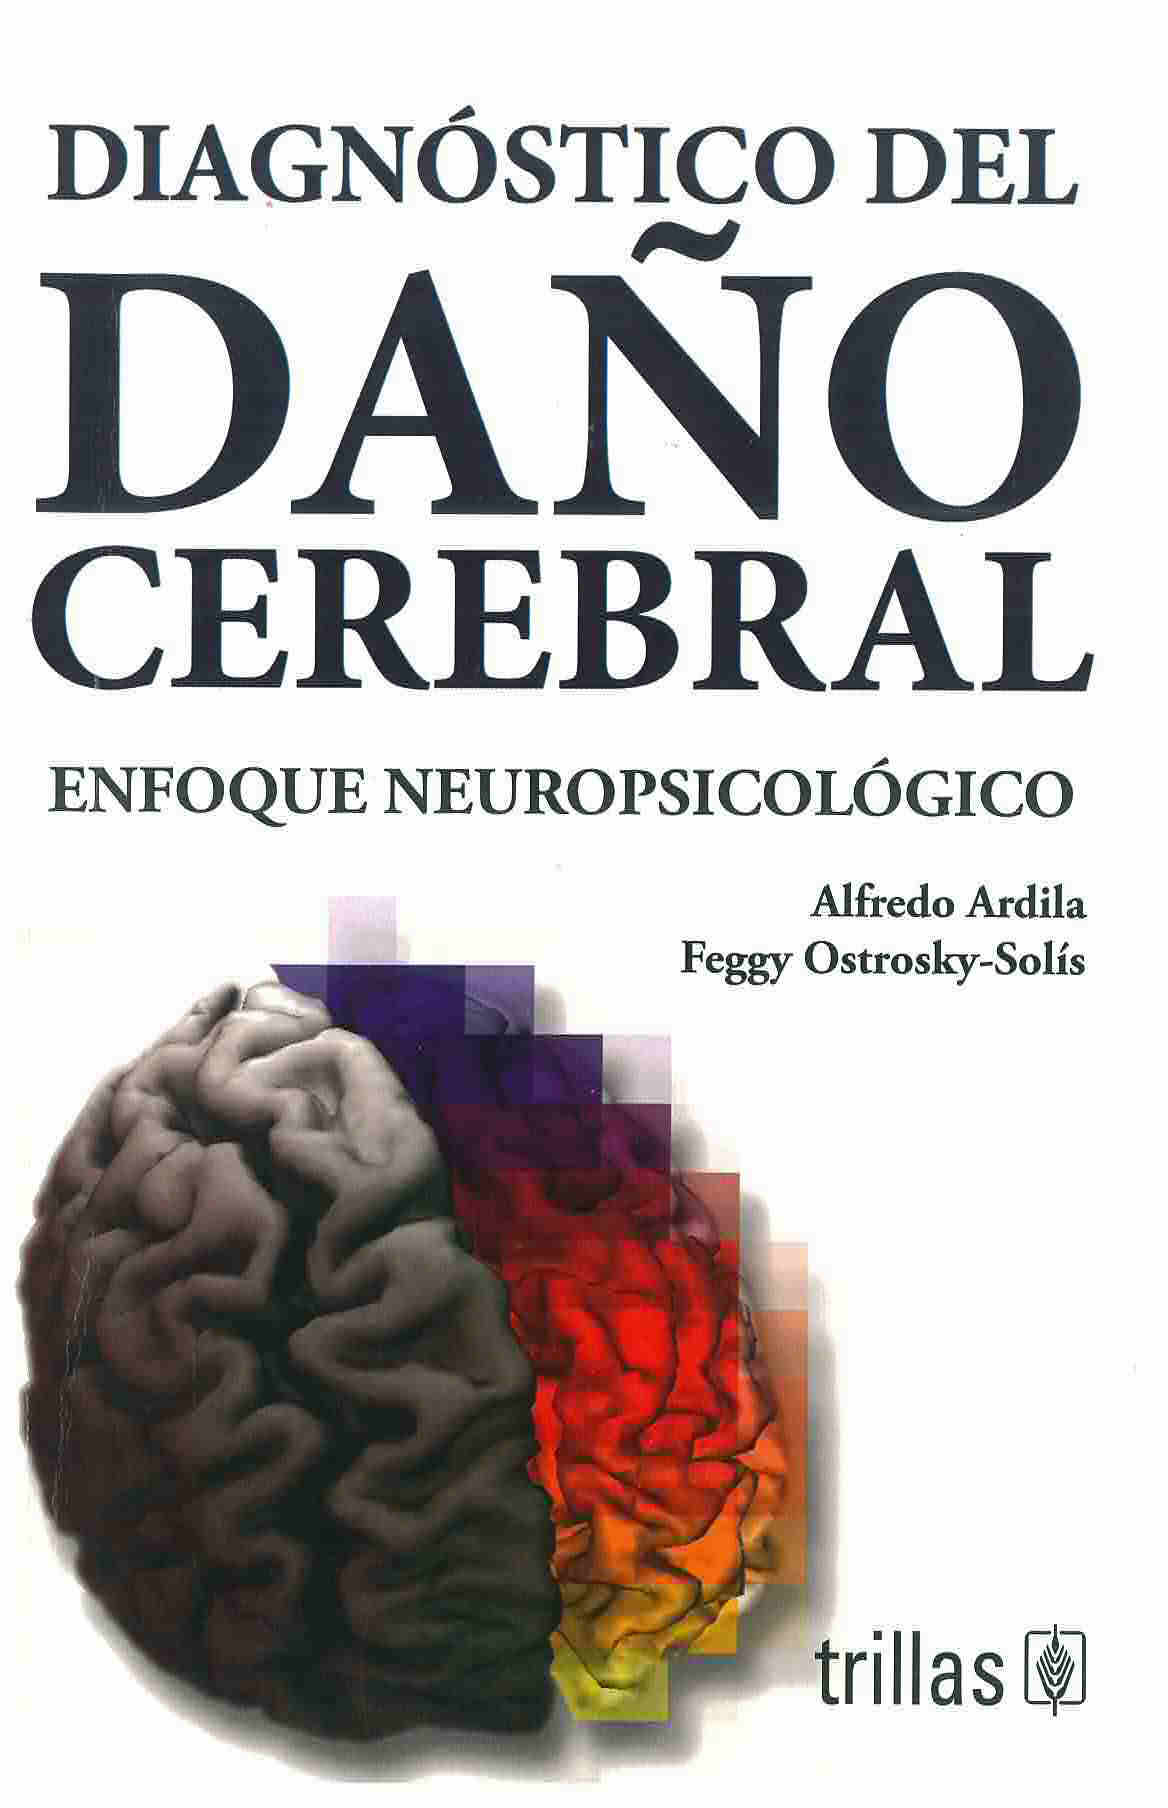 Diagnóstico del daño cerebral : enfoque neuropsicológico